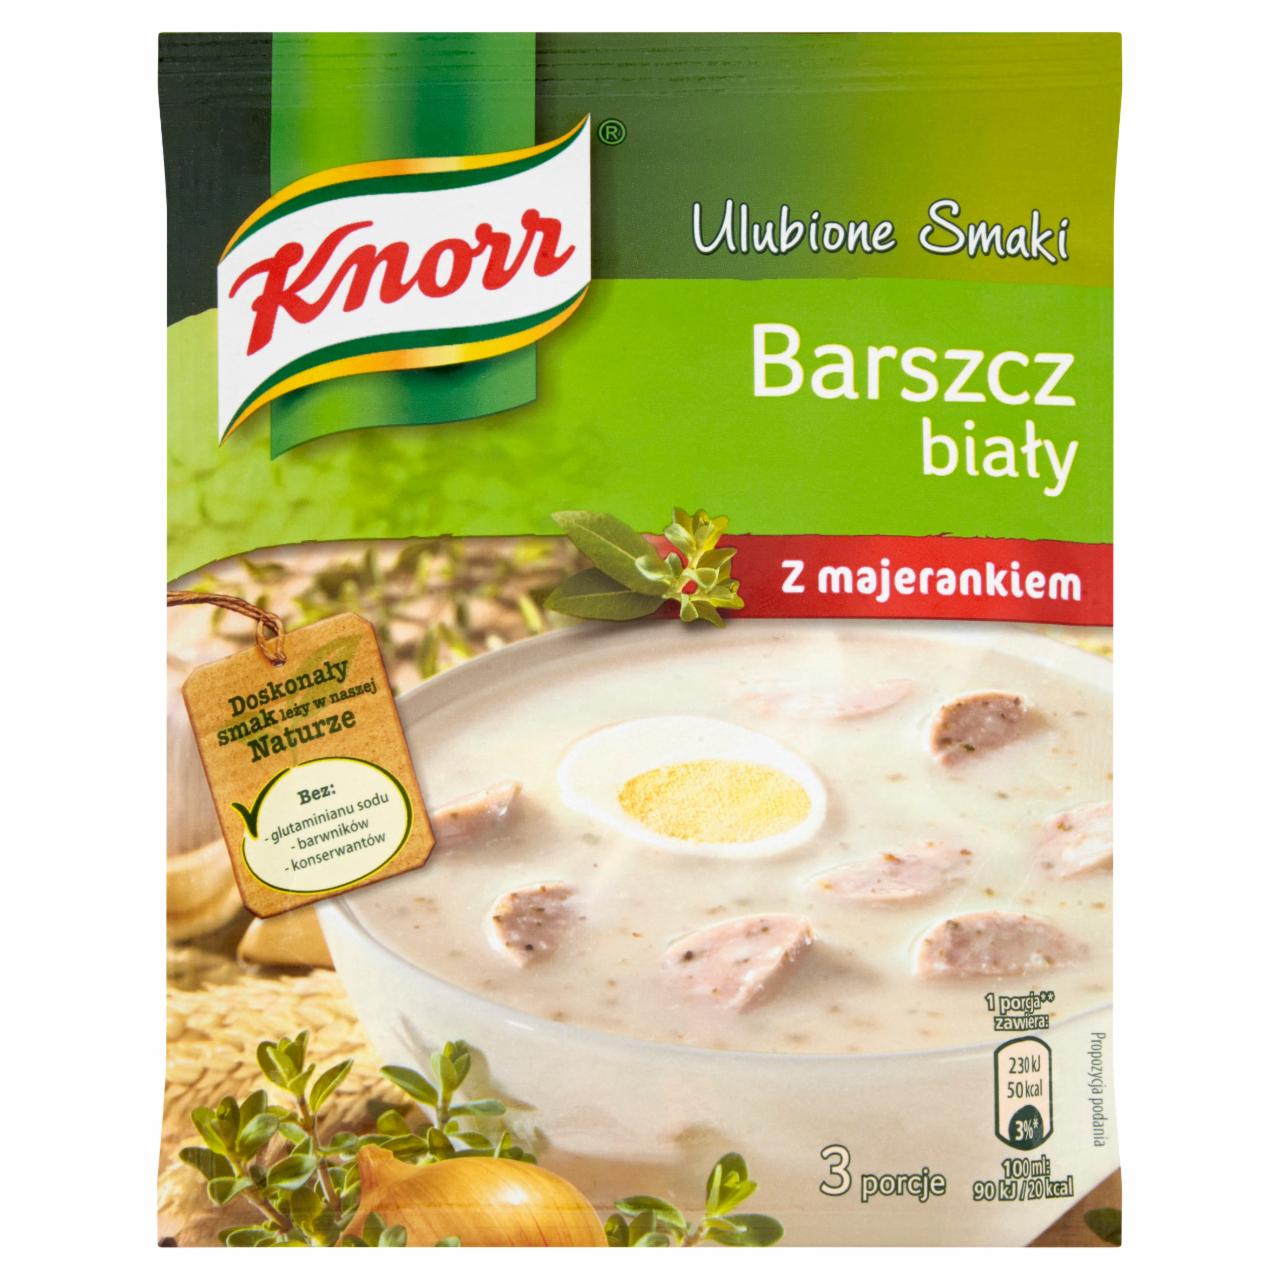 Zdjęcia - Knorr Ulubione Smaki Barszcz biały z majerankiem 47 g